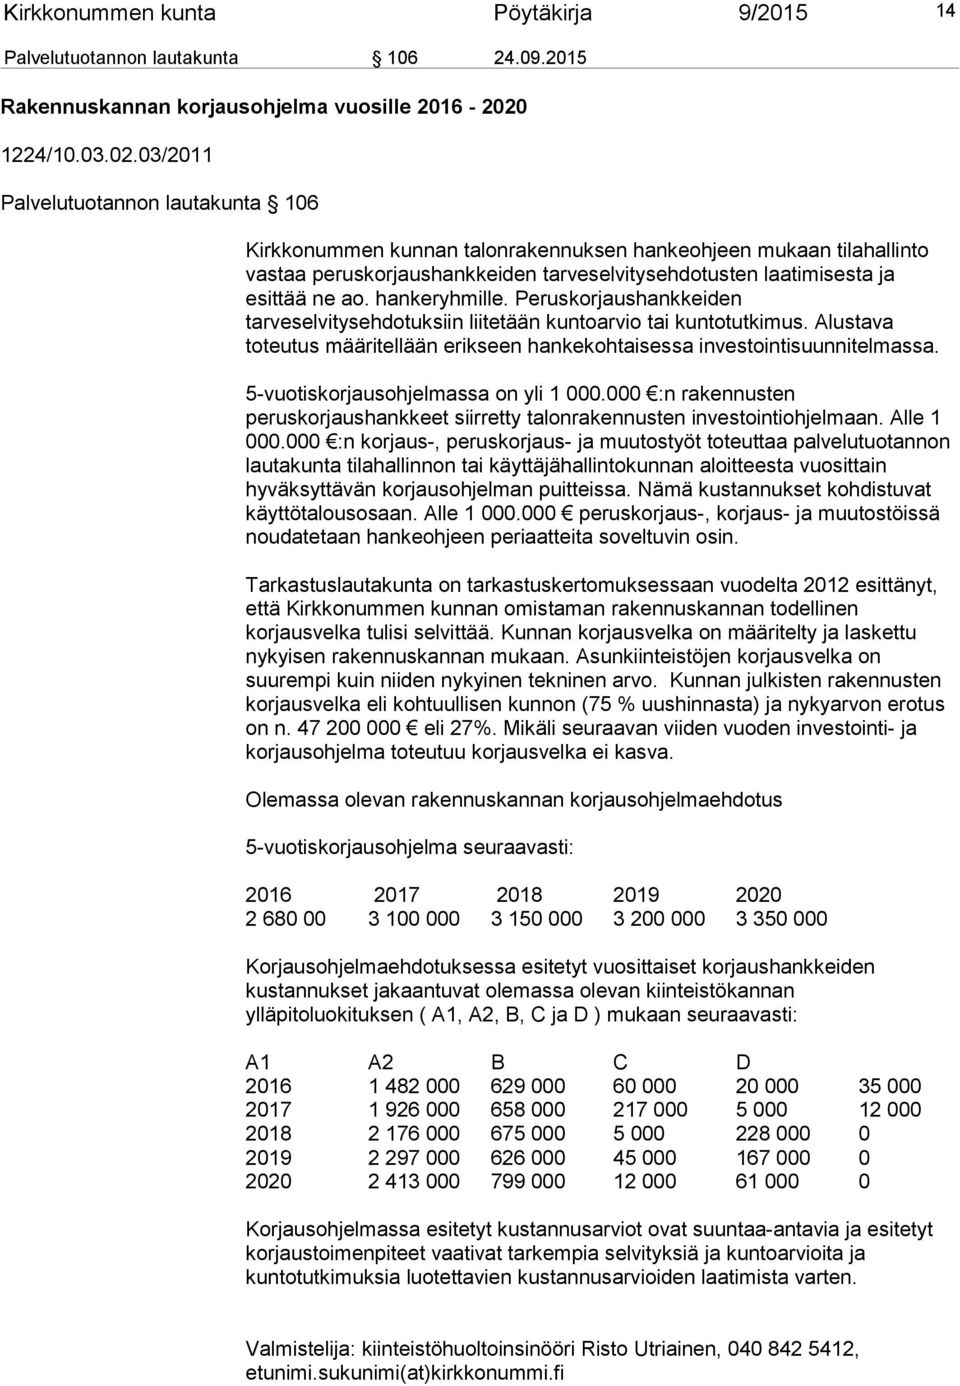 03/2011 Palvelutuotannon lautakunta 106 Kirkkonummen kunnan talonrakennuksen hankeohjeen mukaan tilahallinto vastaa peruskorjaushankkeiden tarveselvitysehdotusten laatimisesta ja esittää ne ao.